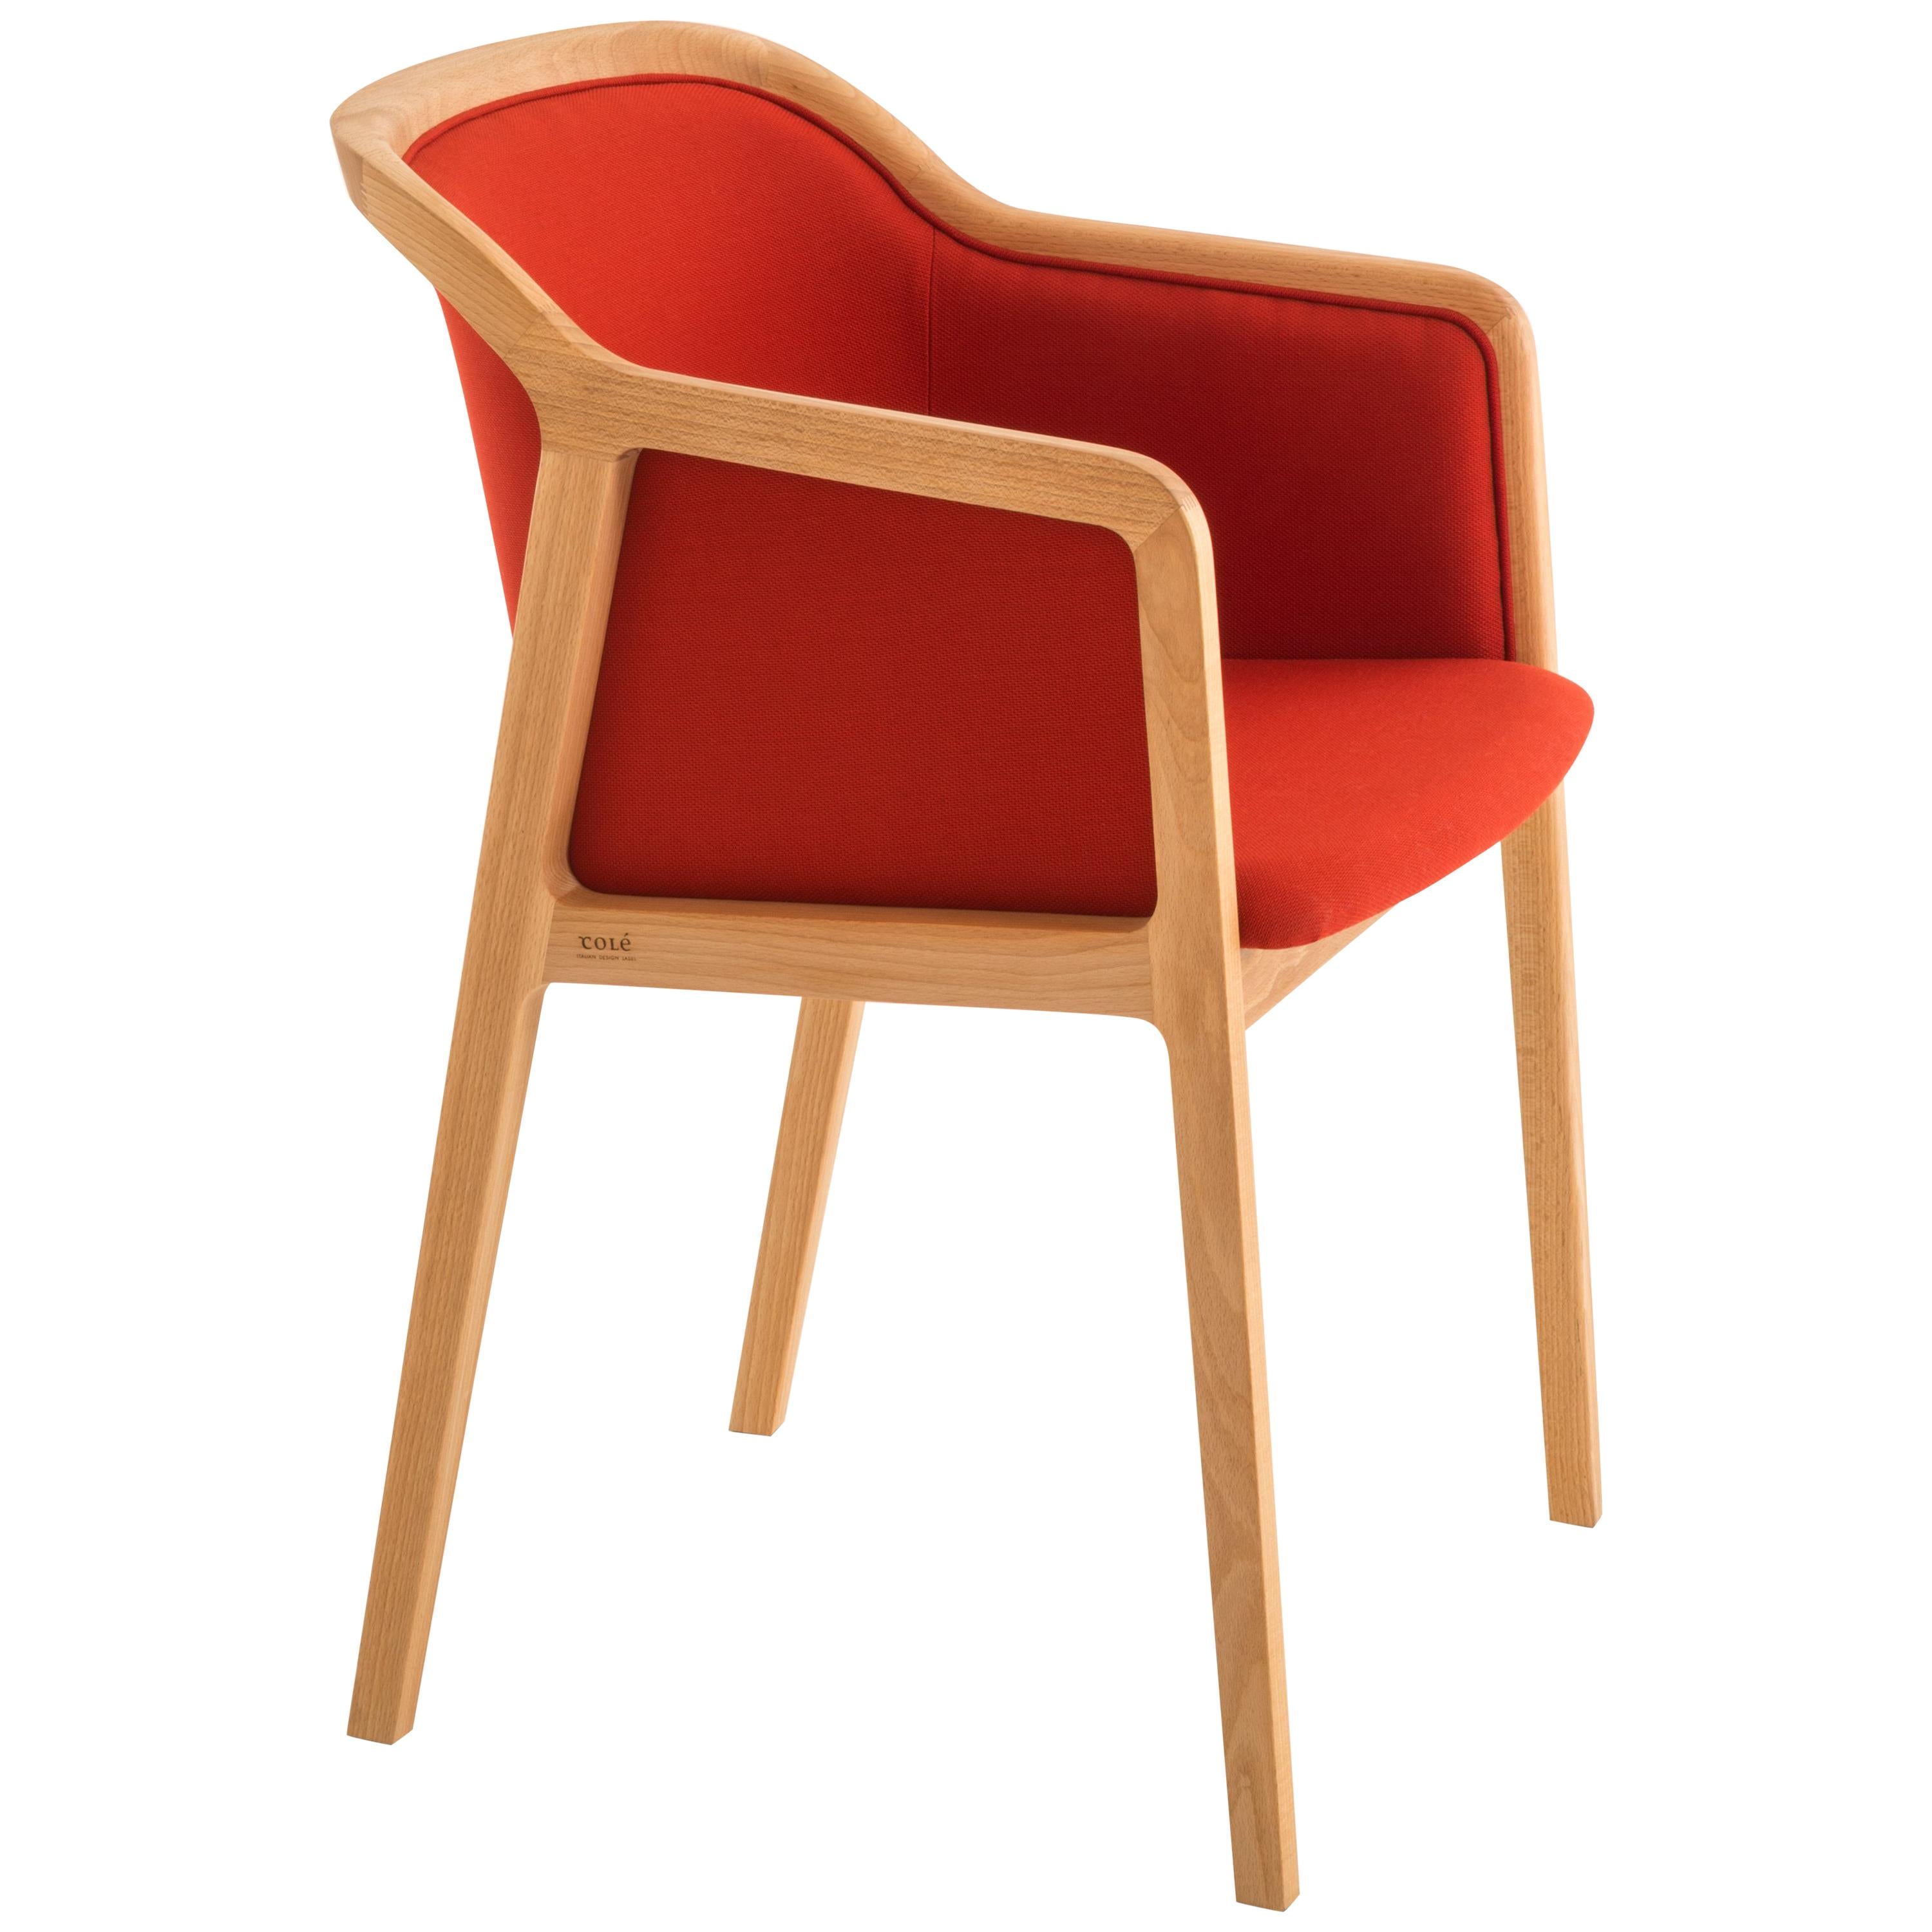 Petit fauteuil souple viennois, design contemporain inspiré des chaises traditionnelles